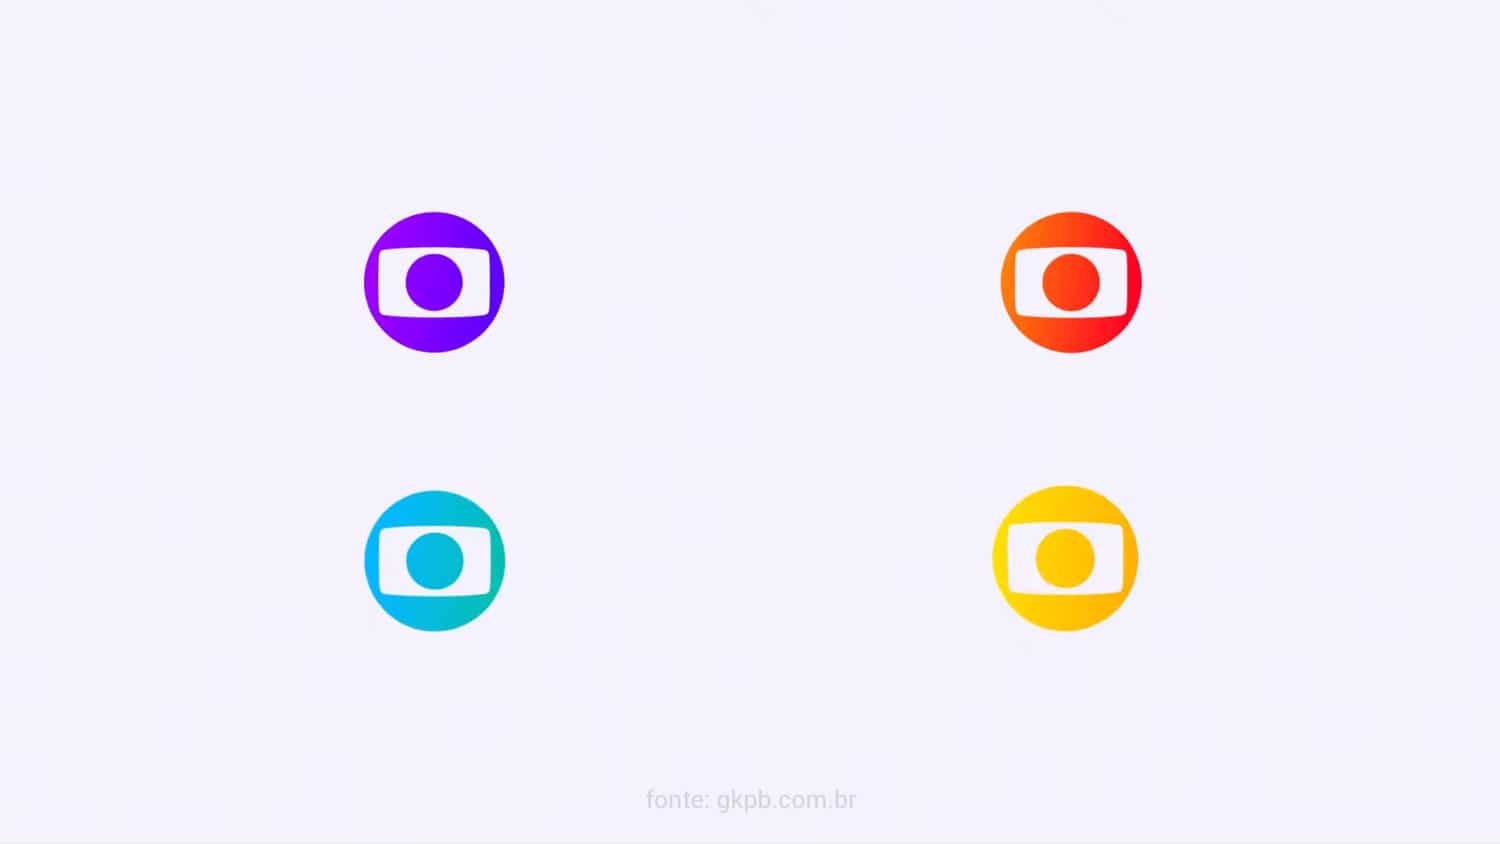 GloboNews ganha novo logo e nova identidade visual - GKPB - Geek